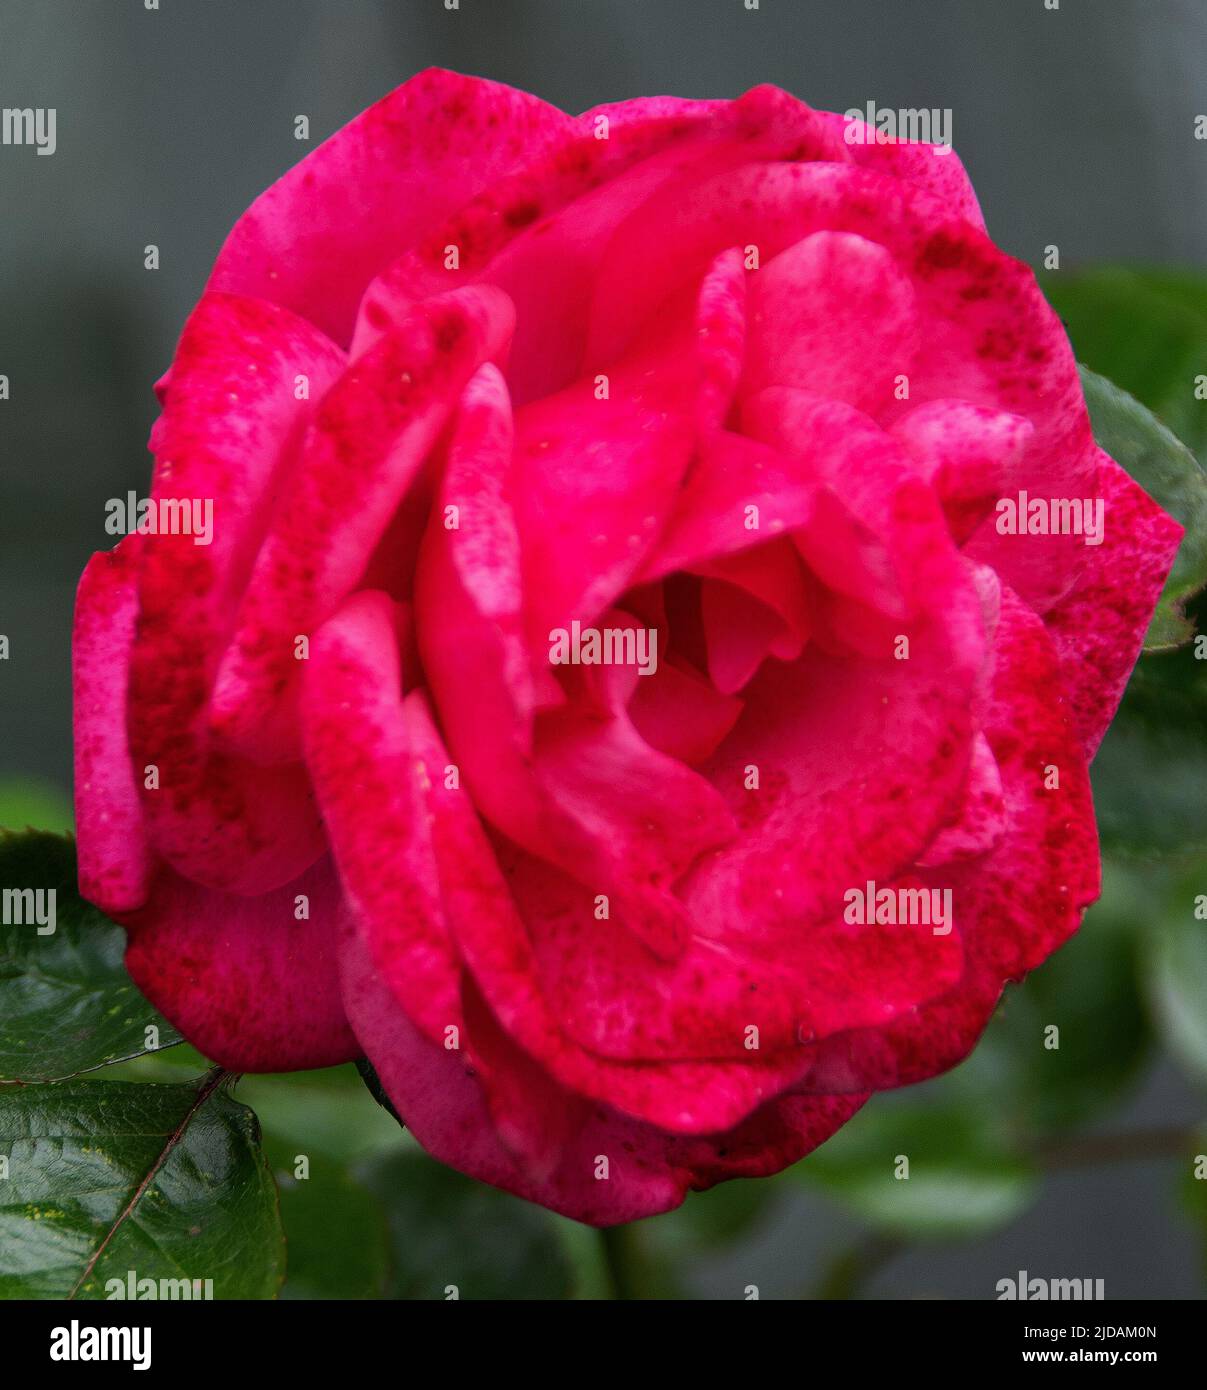 Rosa Rosa Perpetue es una rosa trepadora con flores repetidas. Flores grandes globulares en forma, de color rosa claro - aquí un tono más oscuro de rosa después de una lanza Foto de stock